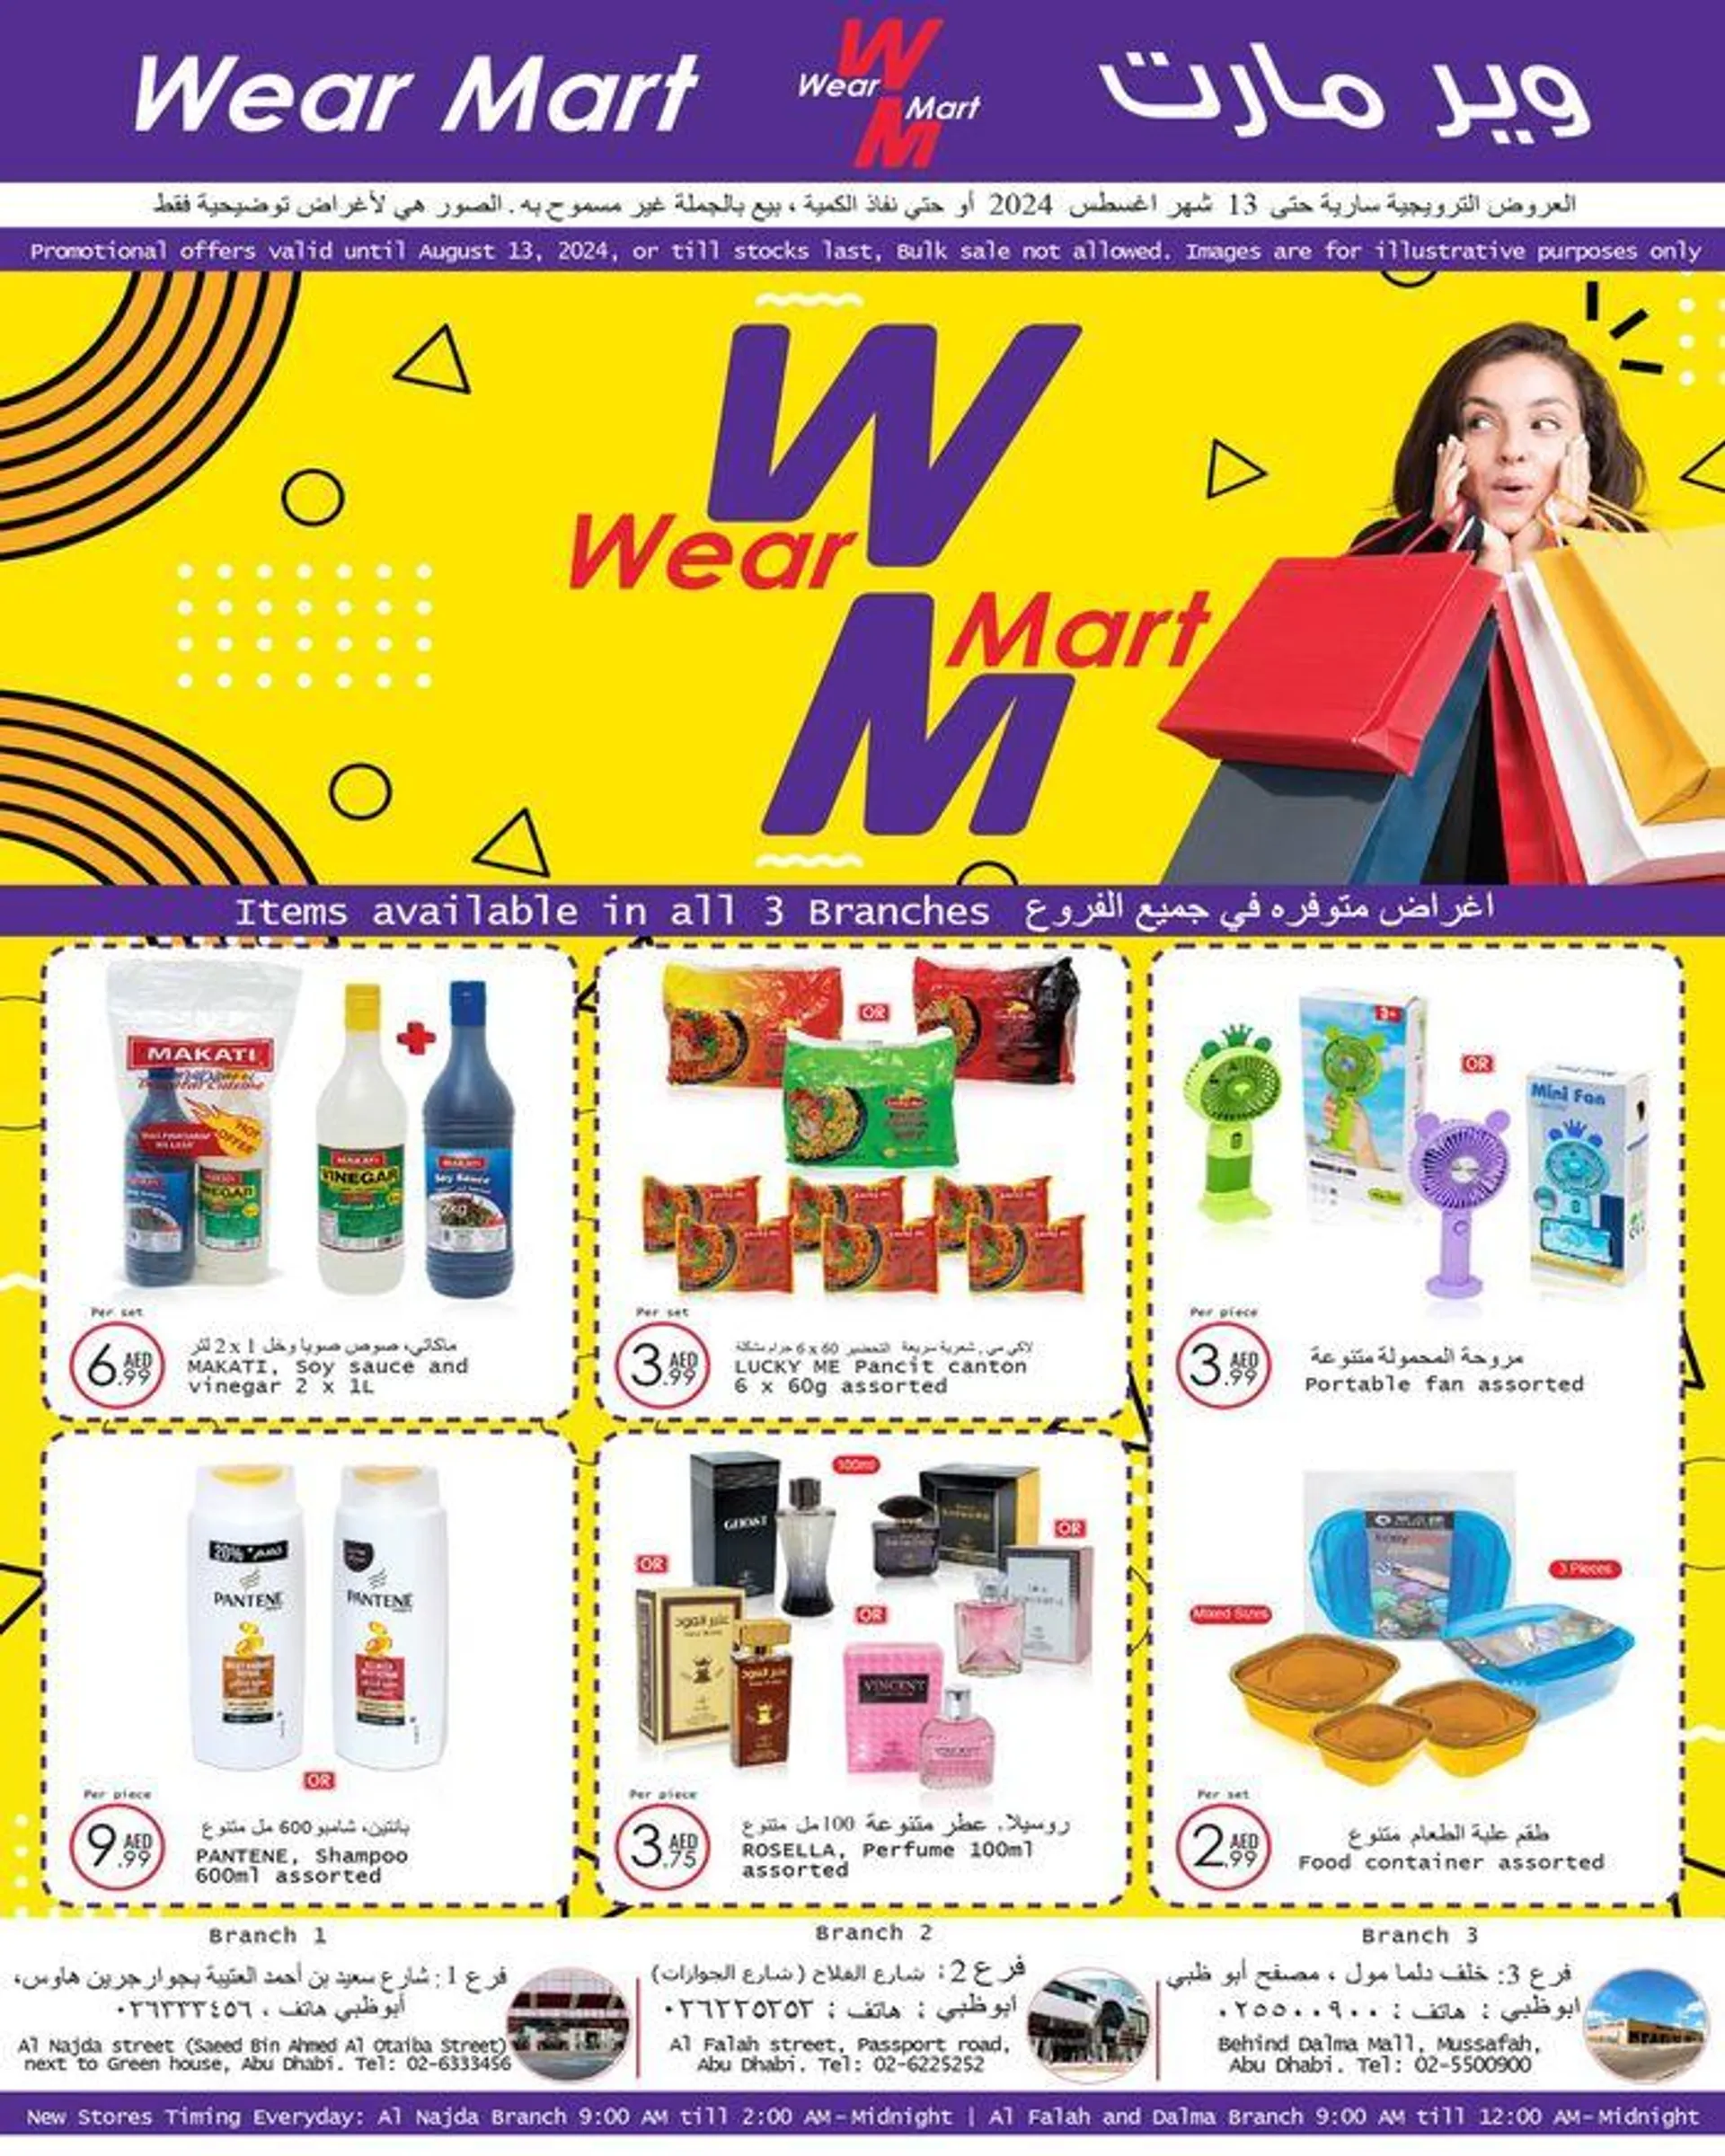 Wear Mart Promotions  - 1